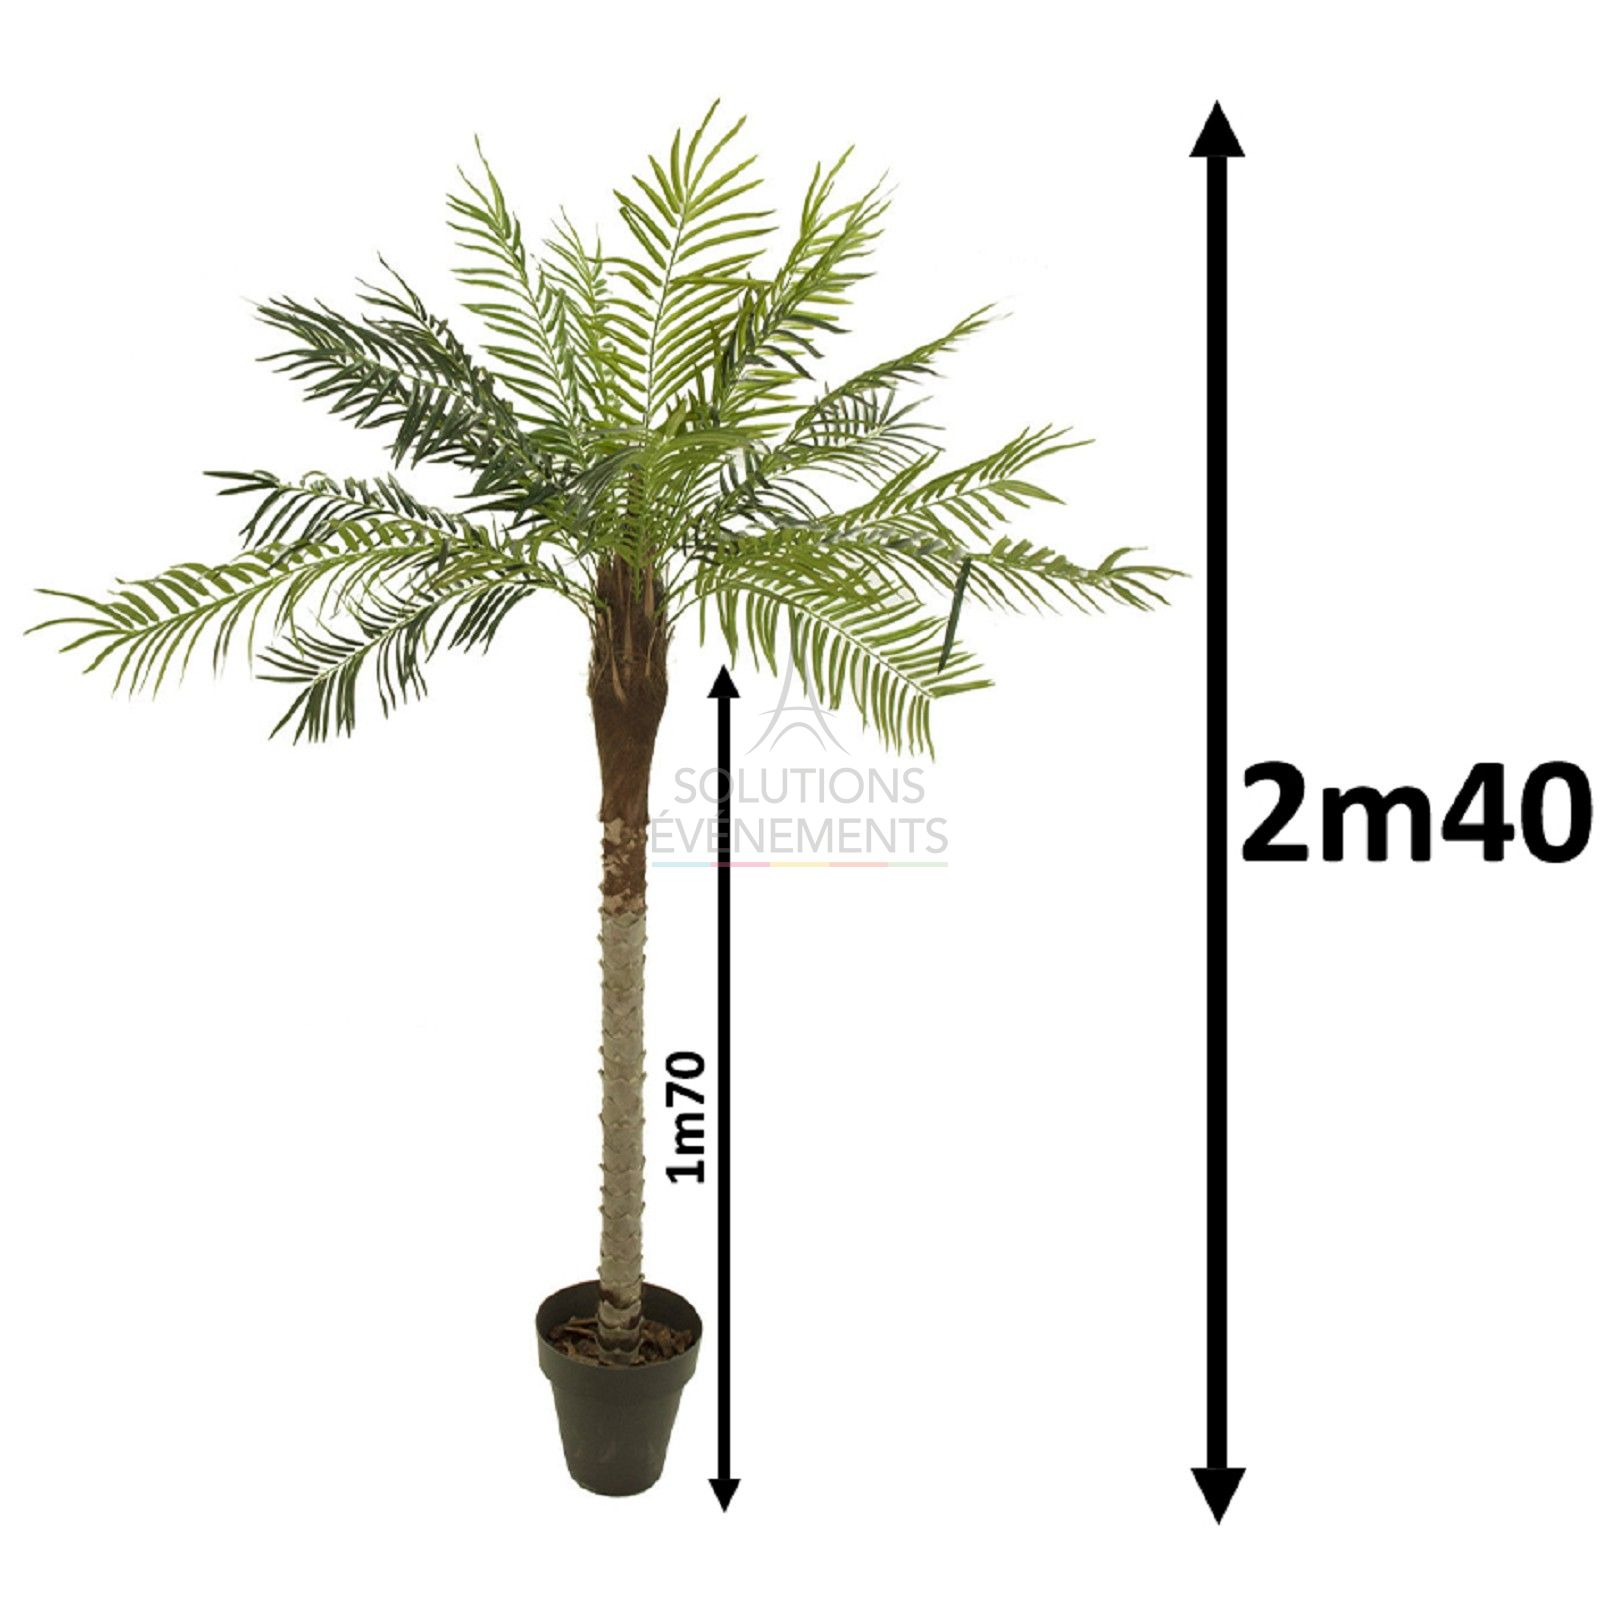 Location de palmiers d'une hauteur de 2m40